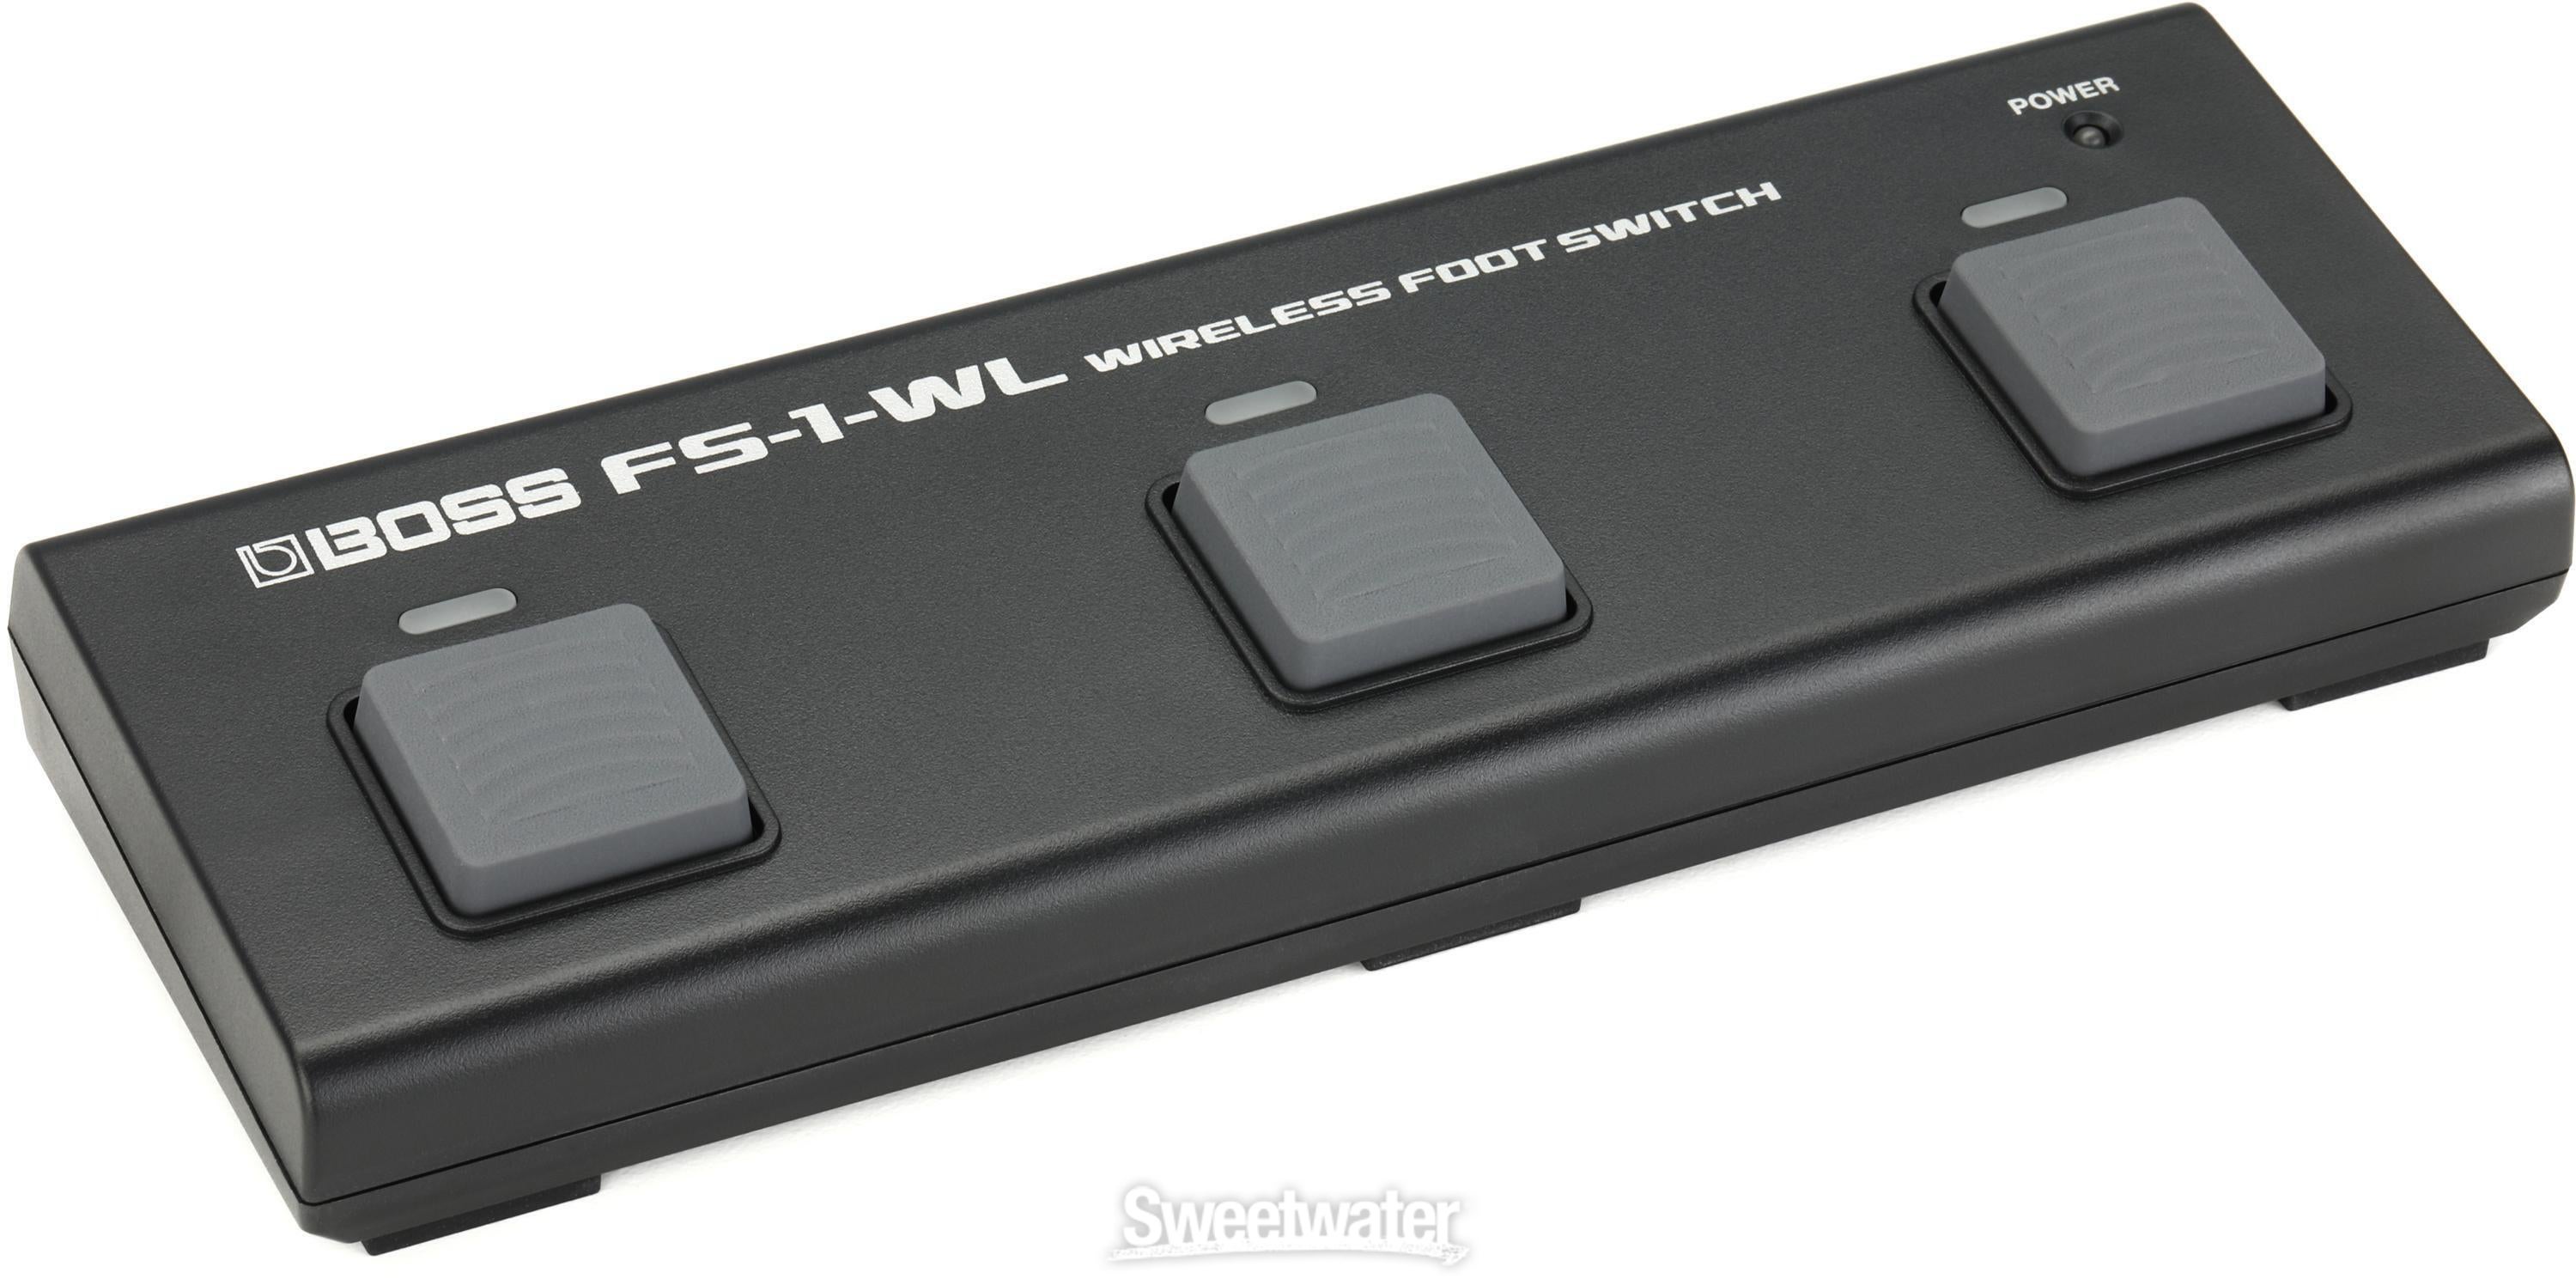 Boss FS-1-WL Bluetooth Wireless Footswitch | Sweetwater